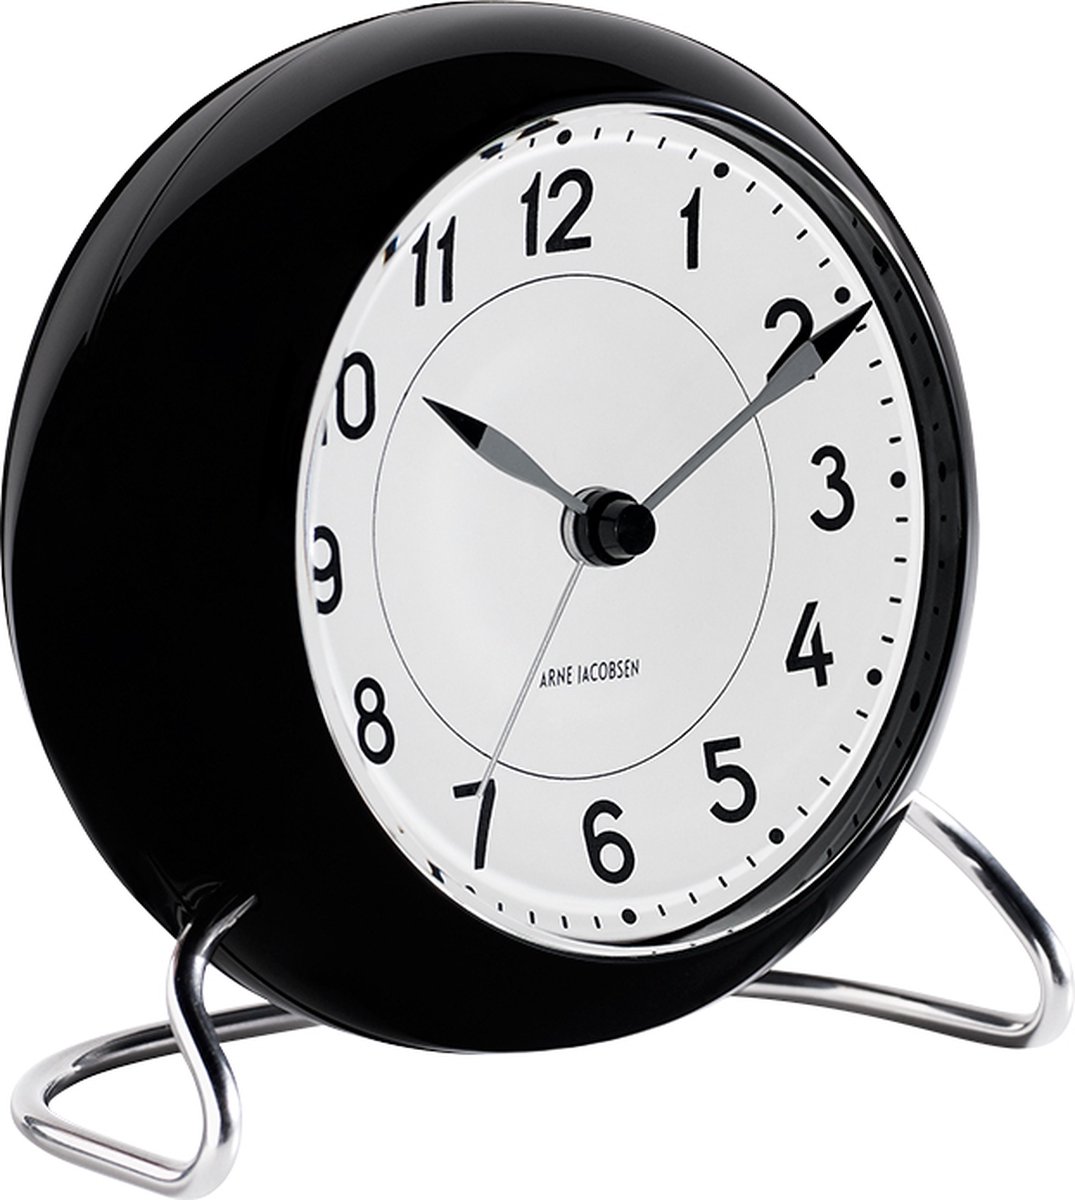 Arne Jacobsen Station Table Clock Wekker Zwart - Ø 11 cm 43672